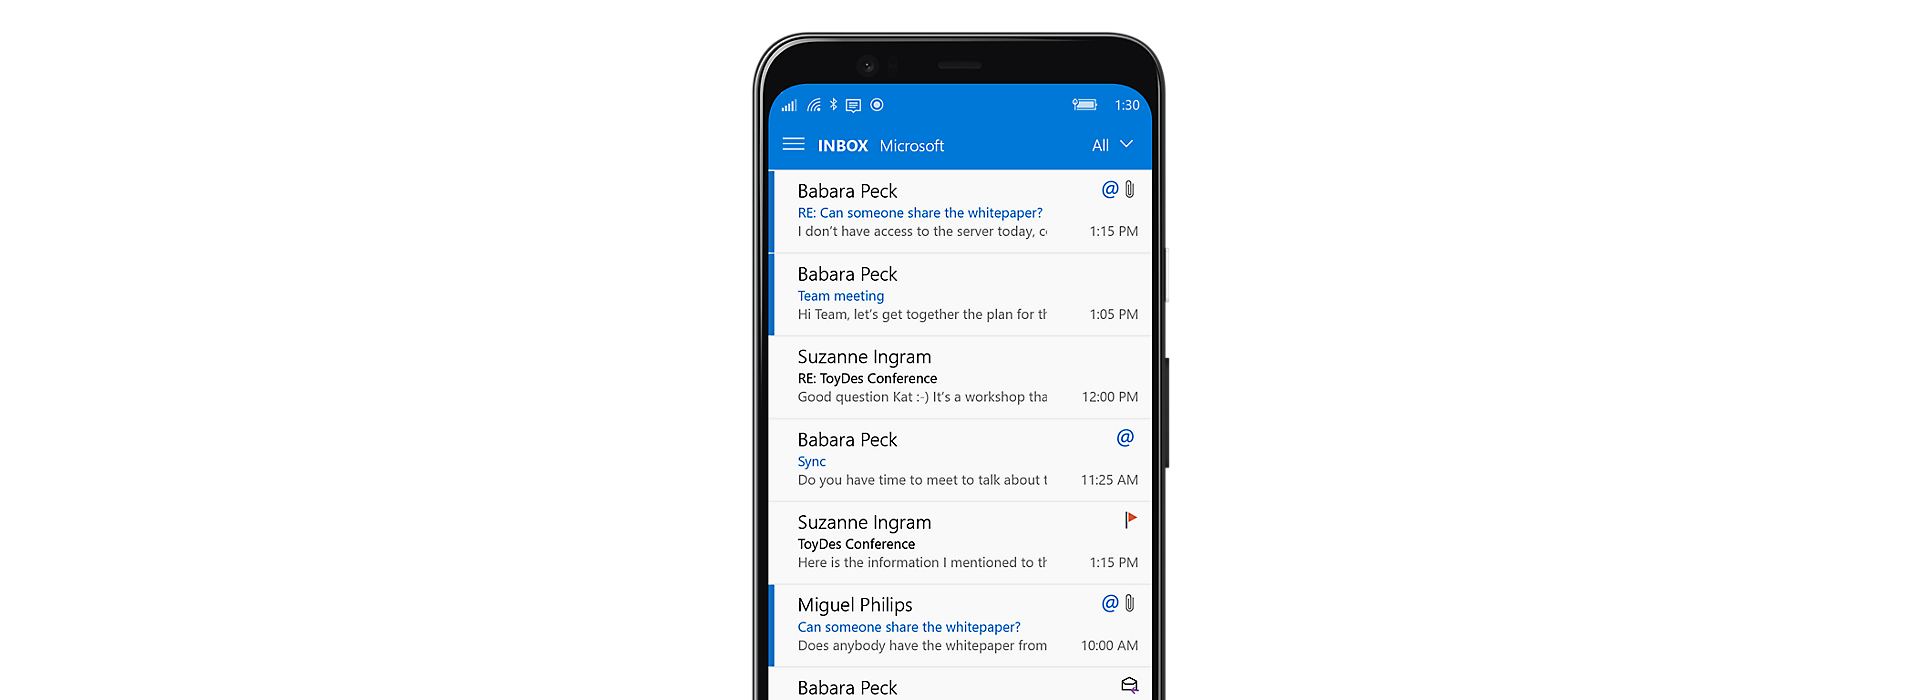 Ein Smartphonebildschirm mit dem Microsoft Outlook-Posteingang